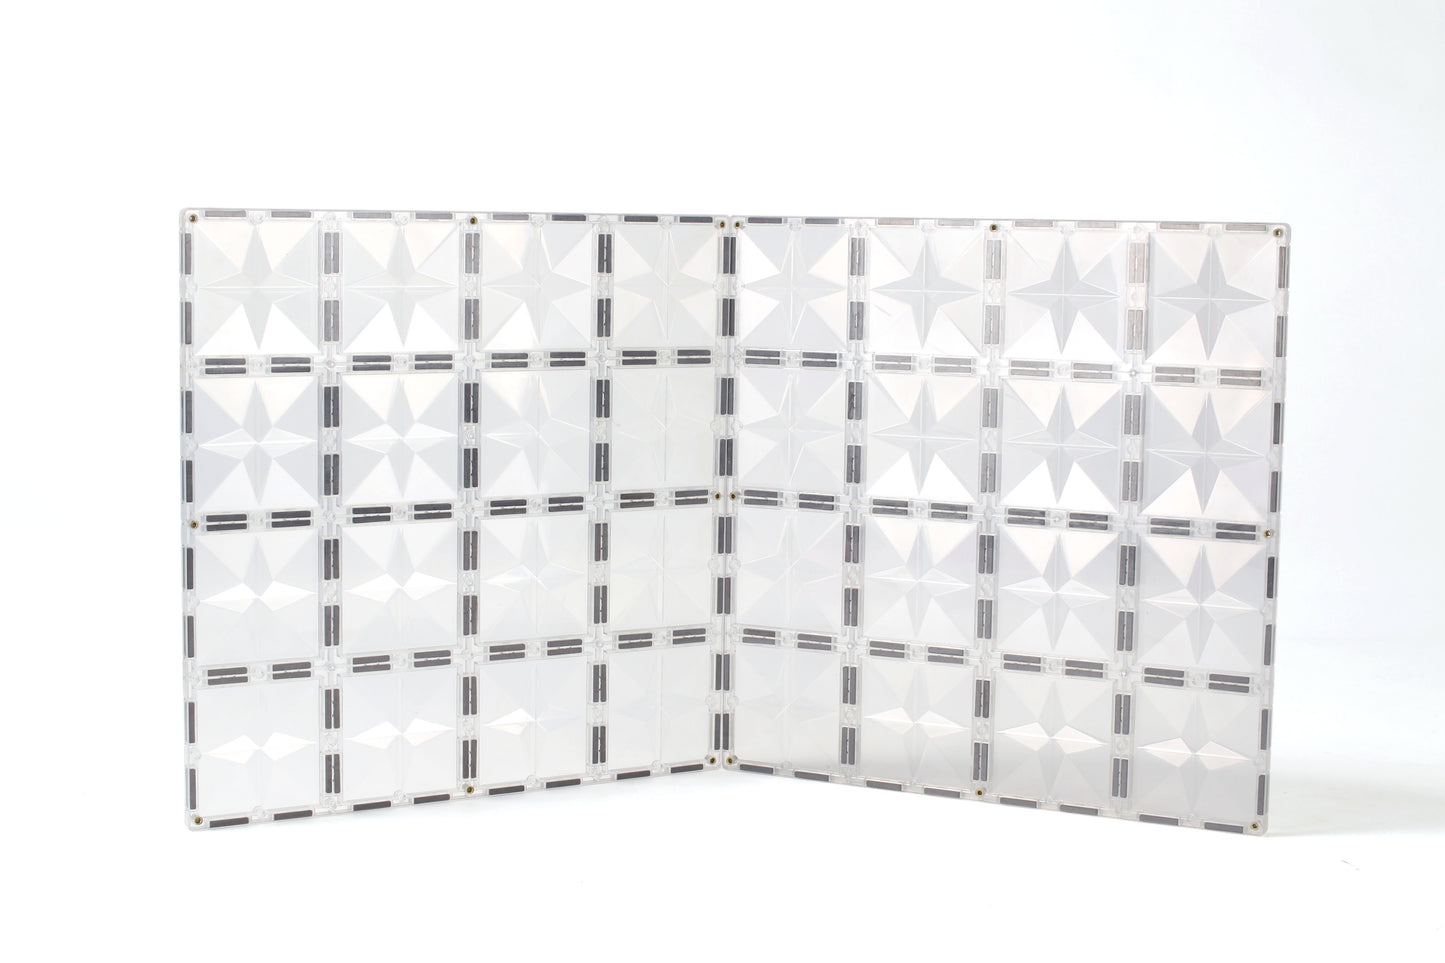 MNTL Magnetic Tile Base Plates (transparent)